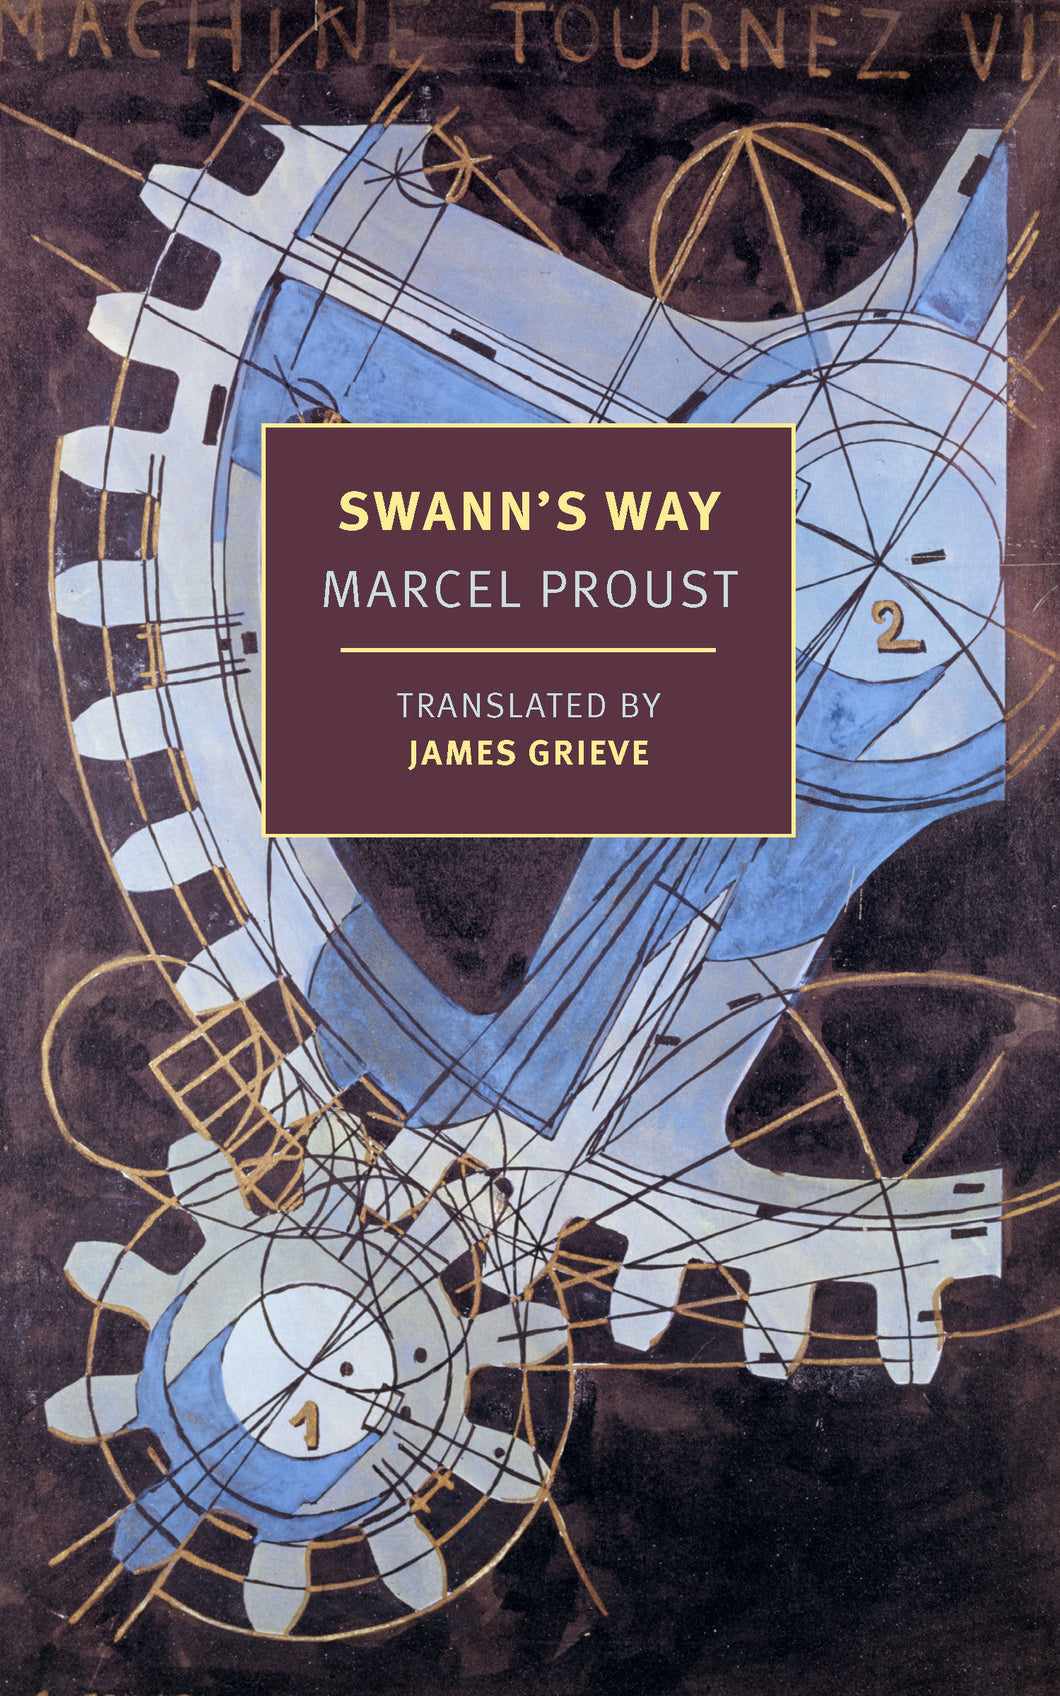 Swann's Way ร้านหนังสือและสิ่งของ เป็นร้านหนังสือภาษาอังกฤษหายาก และร้านกาแฟ หรือ บุ๊คคาเฟ่ ตั้งอยู่สุขุมวิท กรุงเทพ